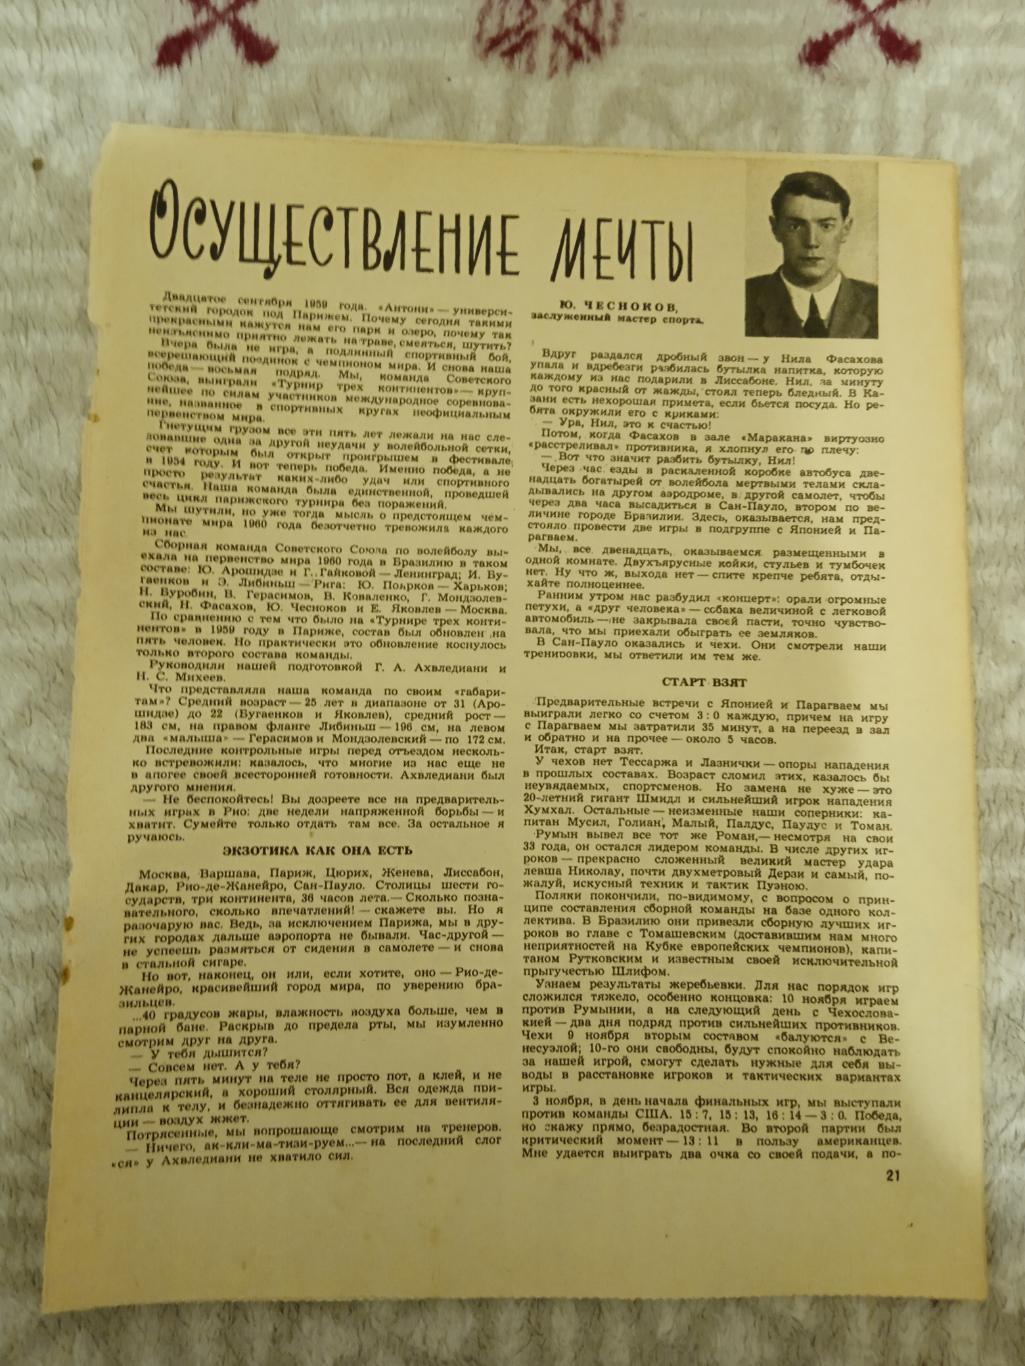 Статья.Волейбол.СССР - чемпионы мира 1960.Журнал ФиС 1961 г.